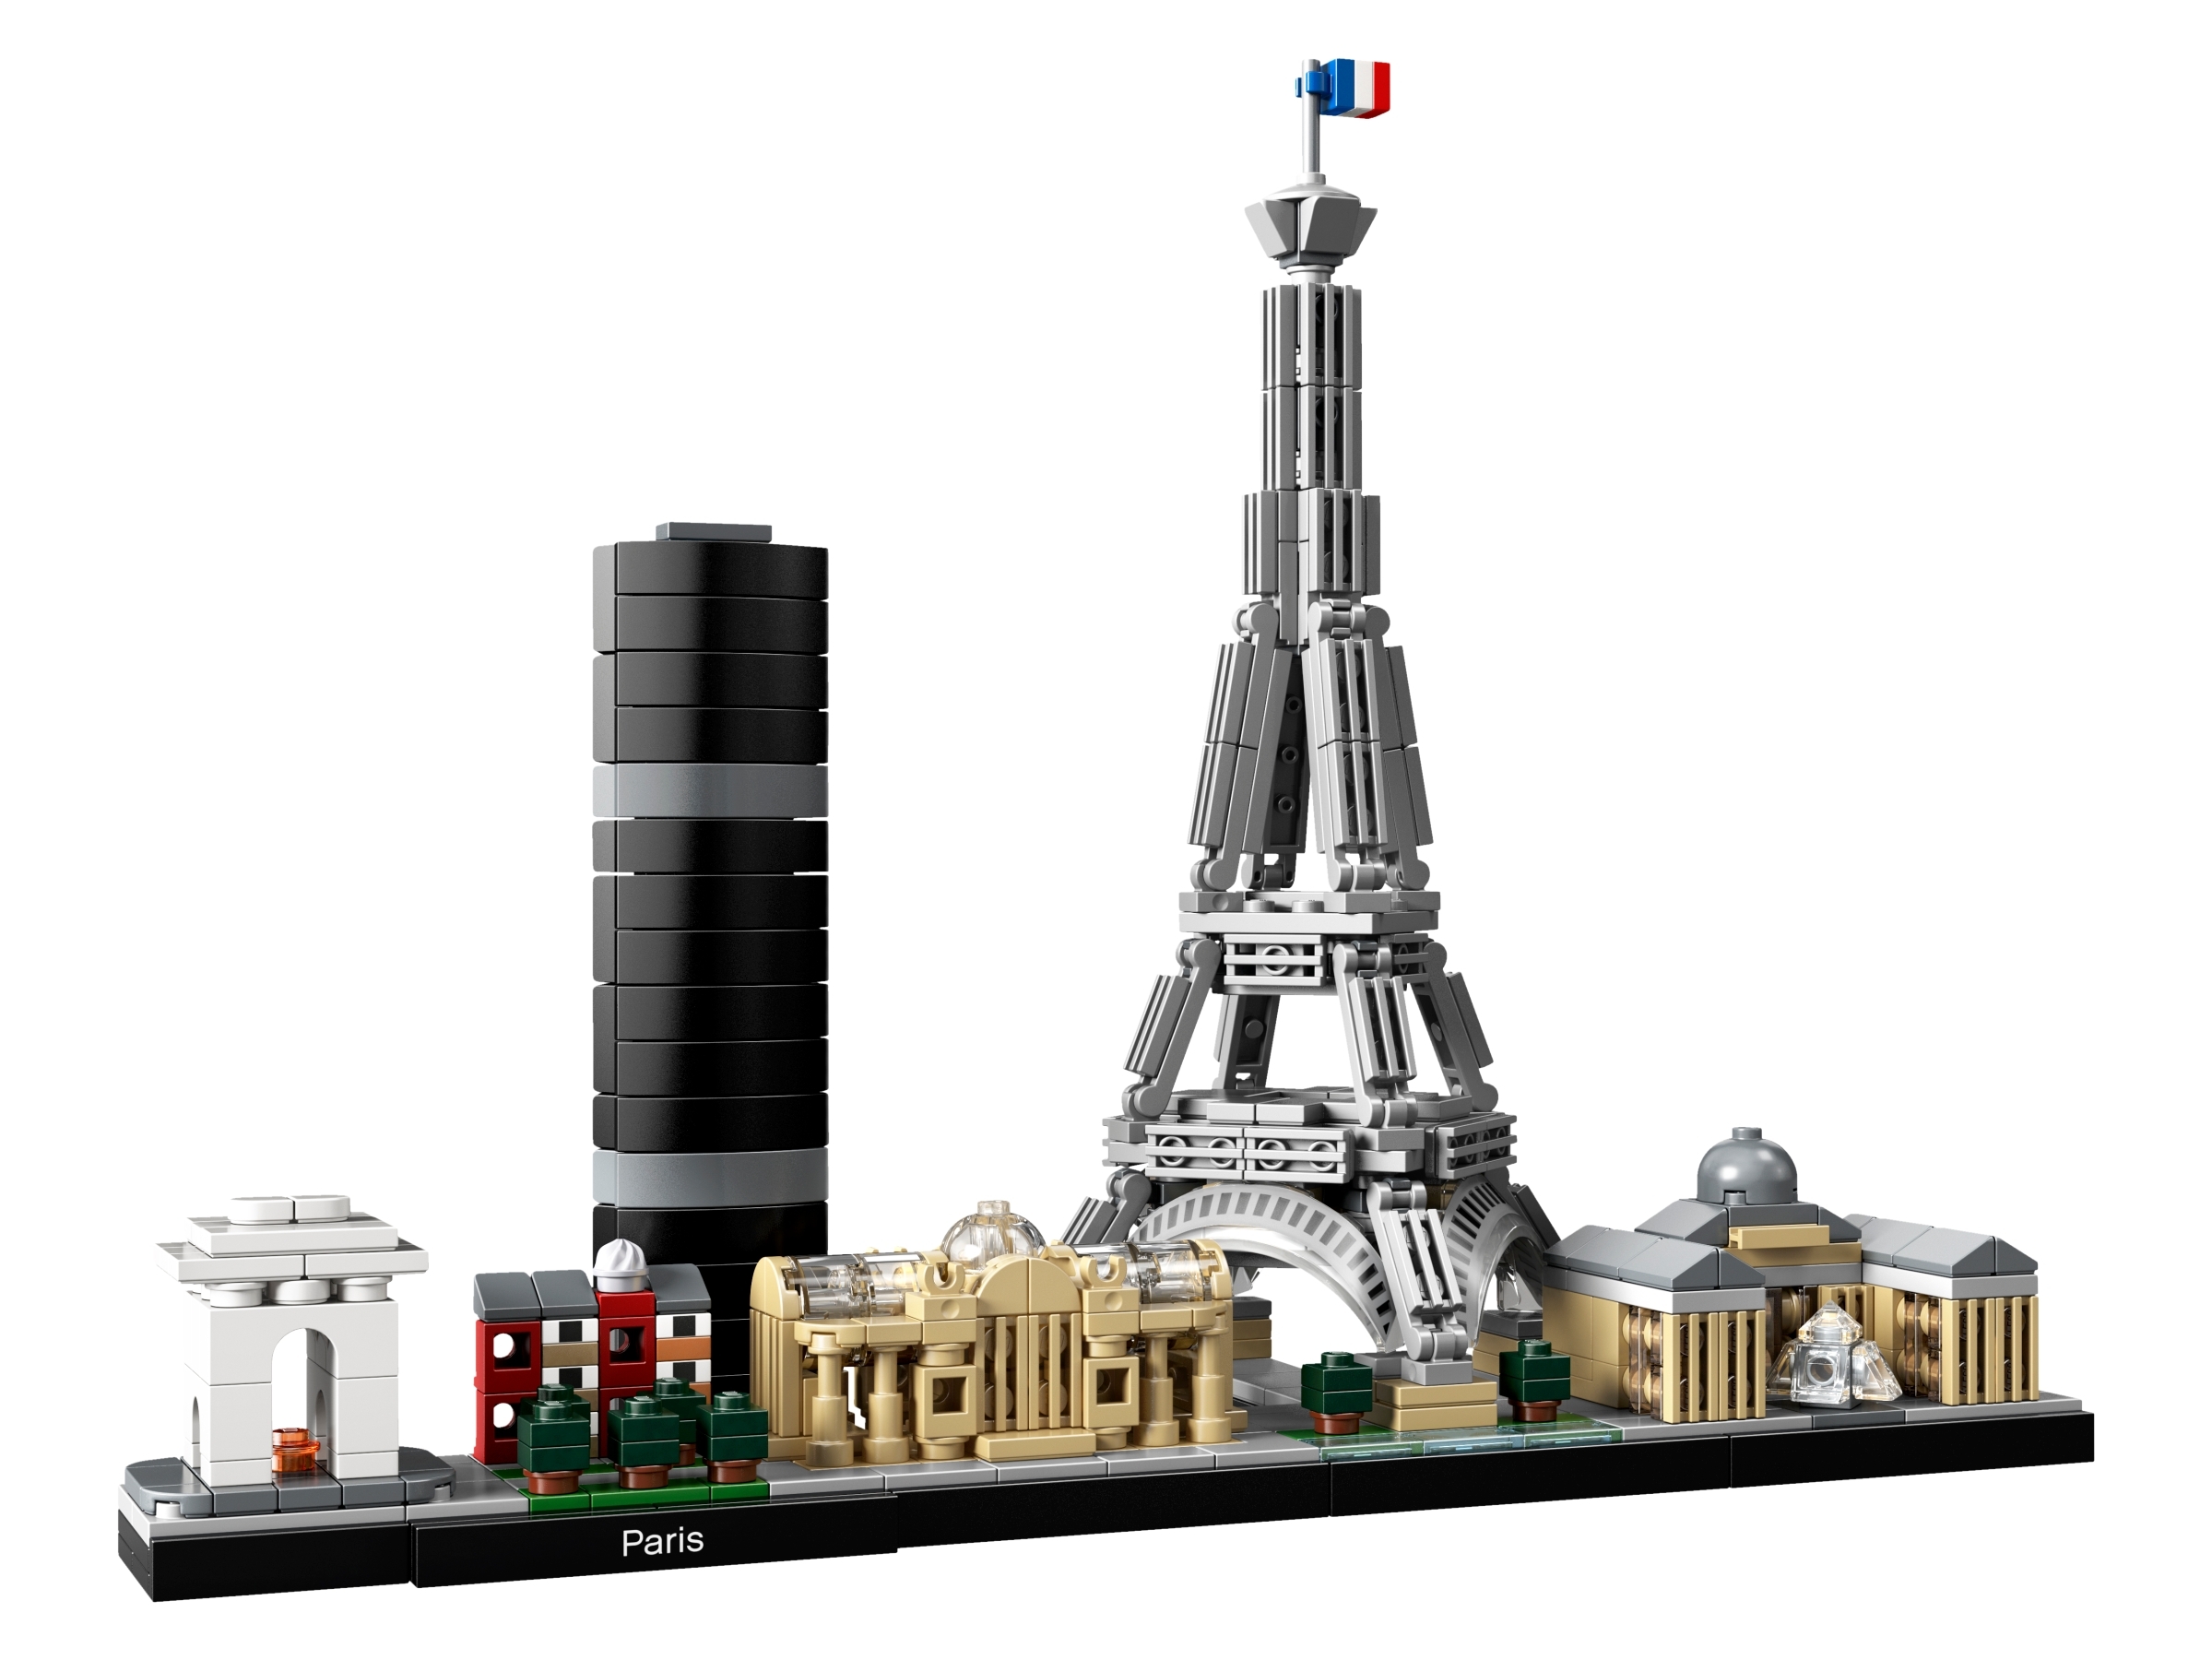 Lego Architecture – Paris